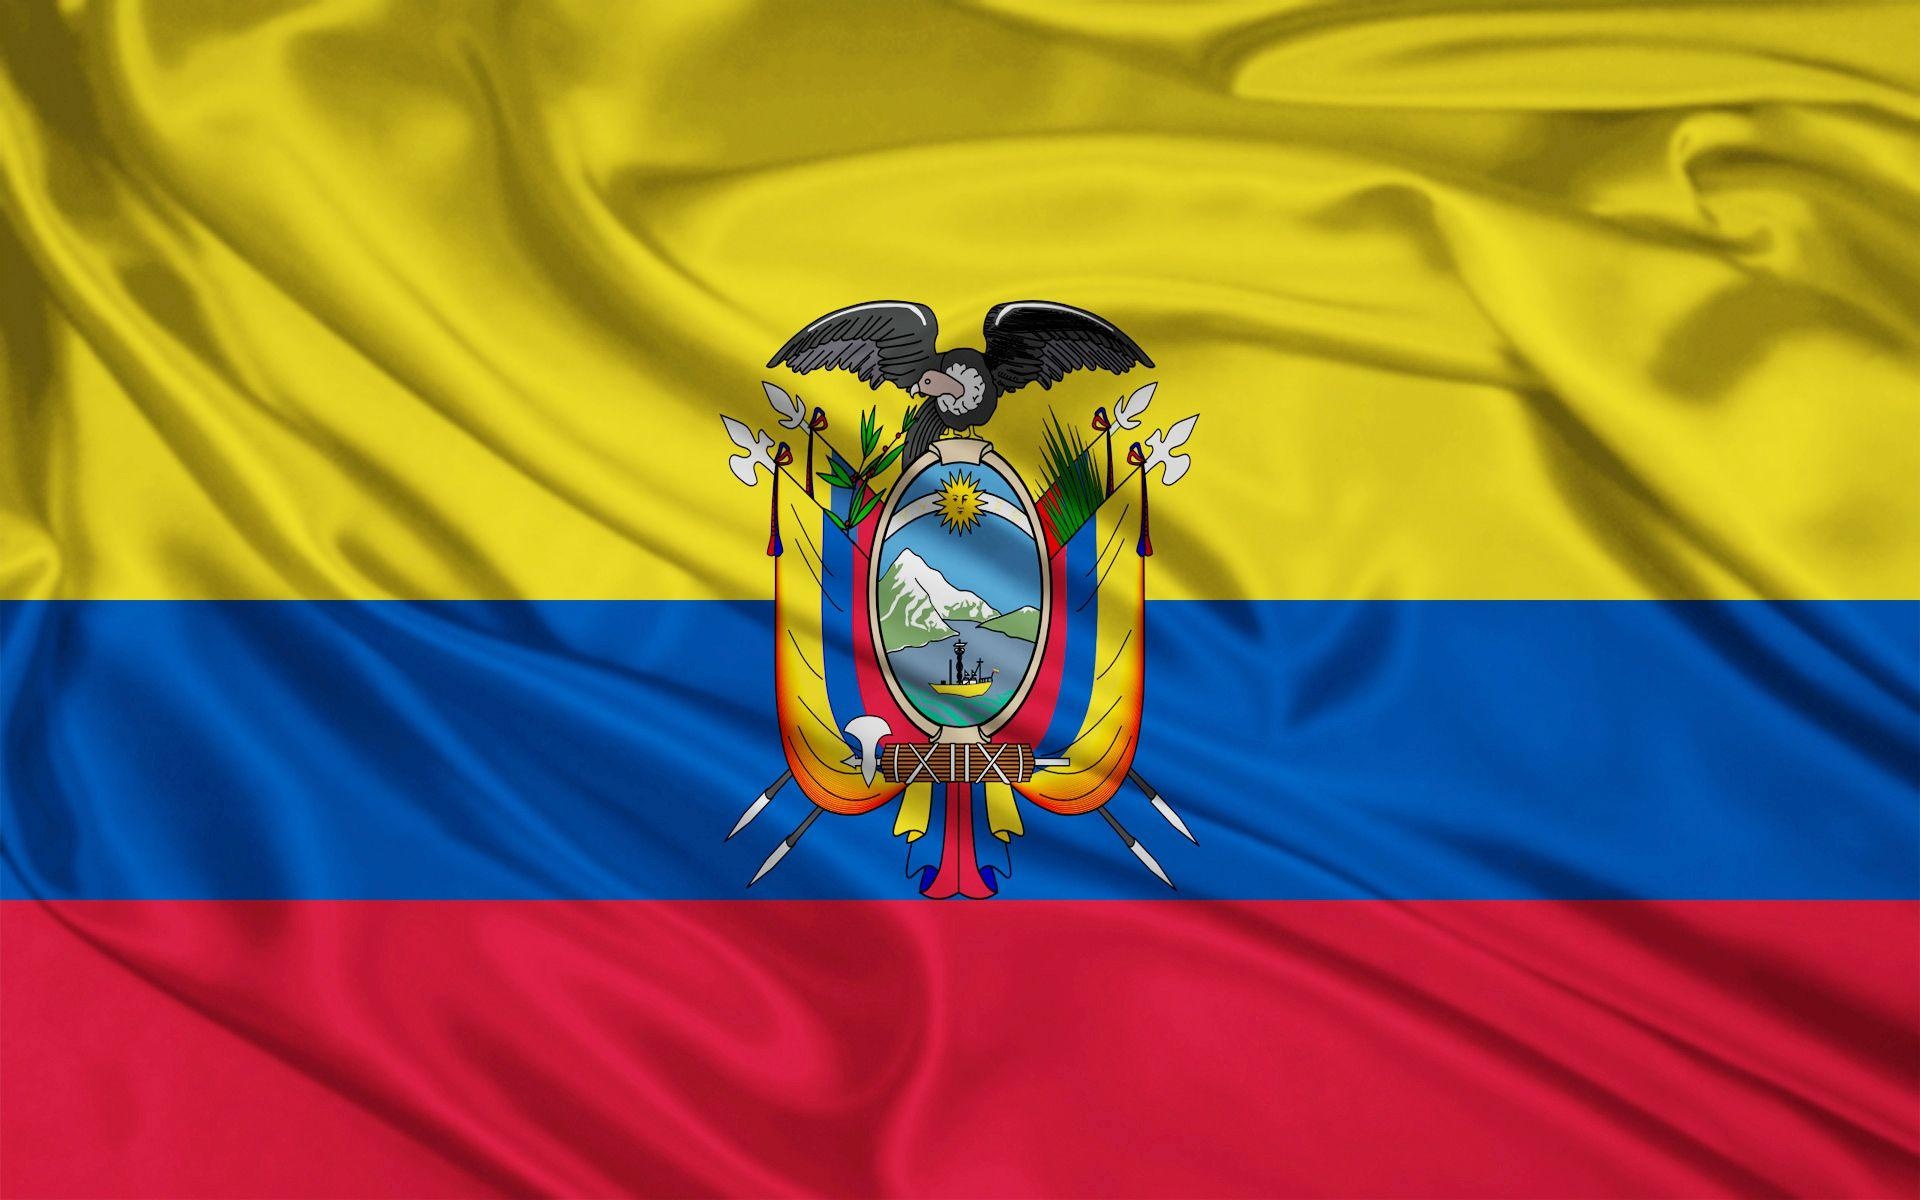 Ecuador: Ecuadorian flag, Coat of arms. 1920x1200 HD Wallpaper.